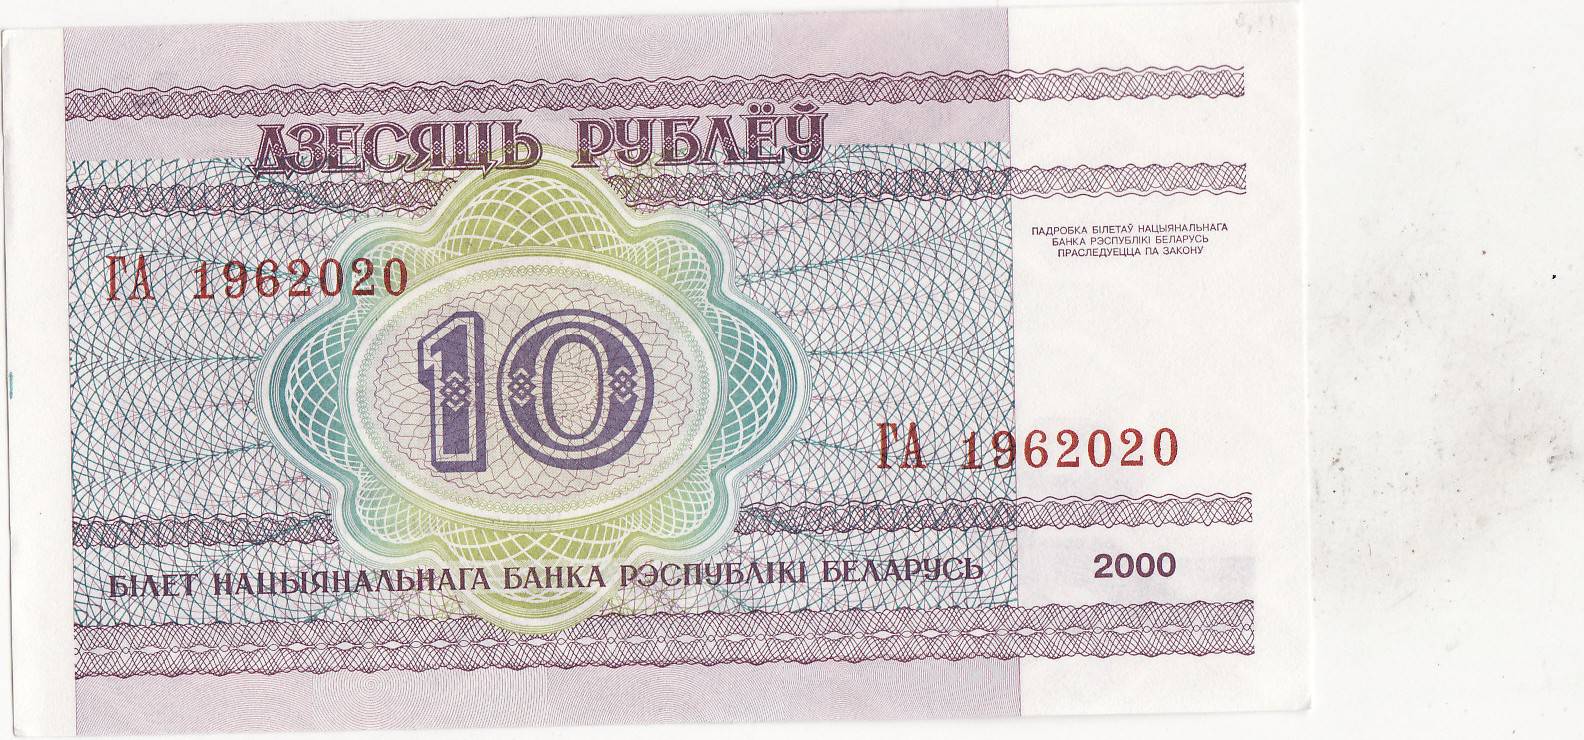 Бона Беларусь Белоруссия 10 рублей 2000. 10 Рублей 2000 Беларусь. 30 рублей белорусских на российские